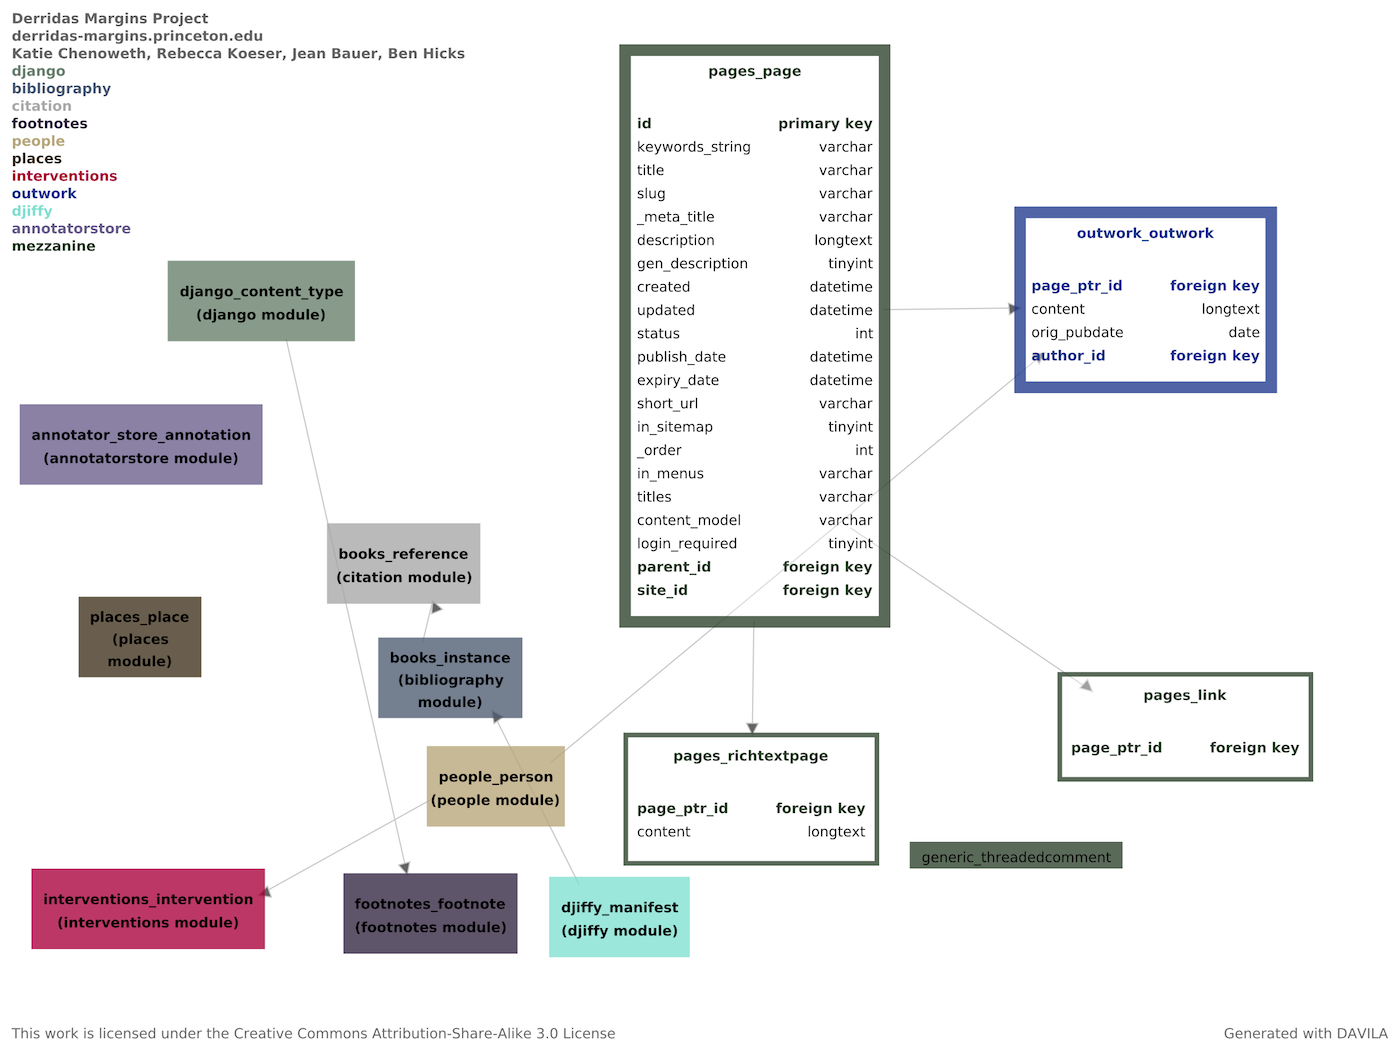 Outwork schema detail for Derrida 0.9